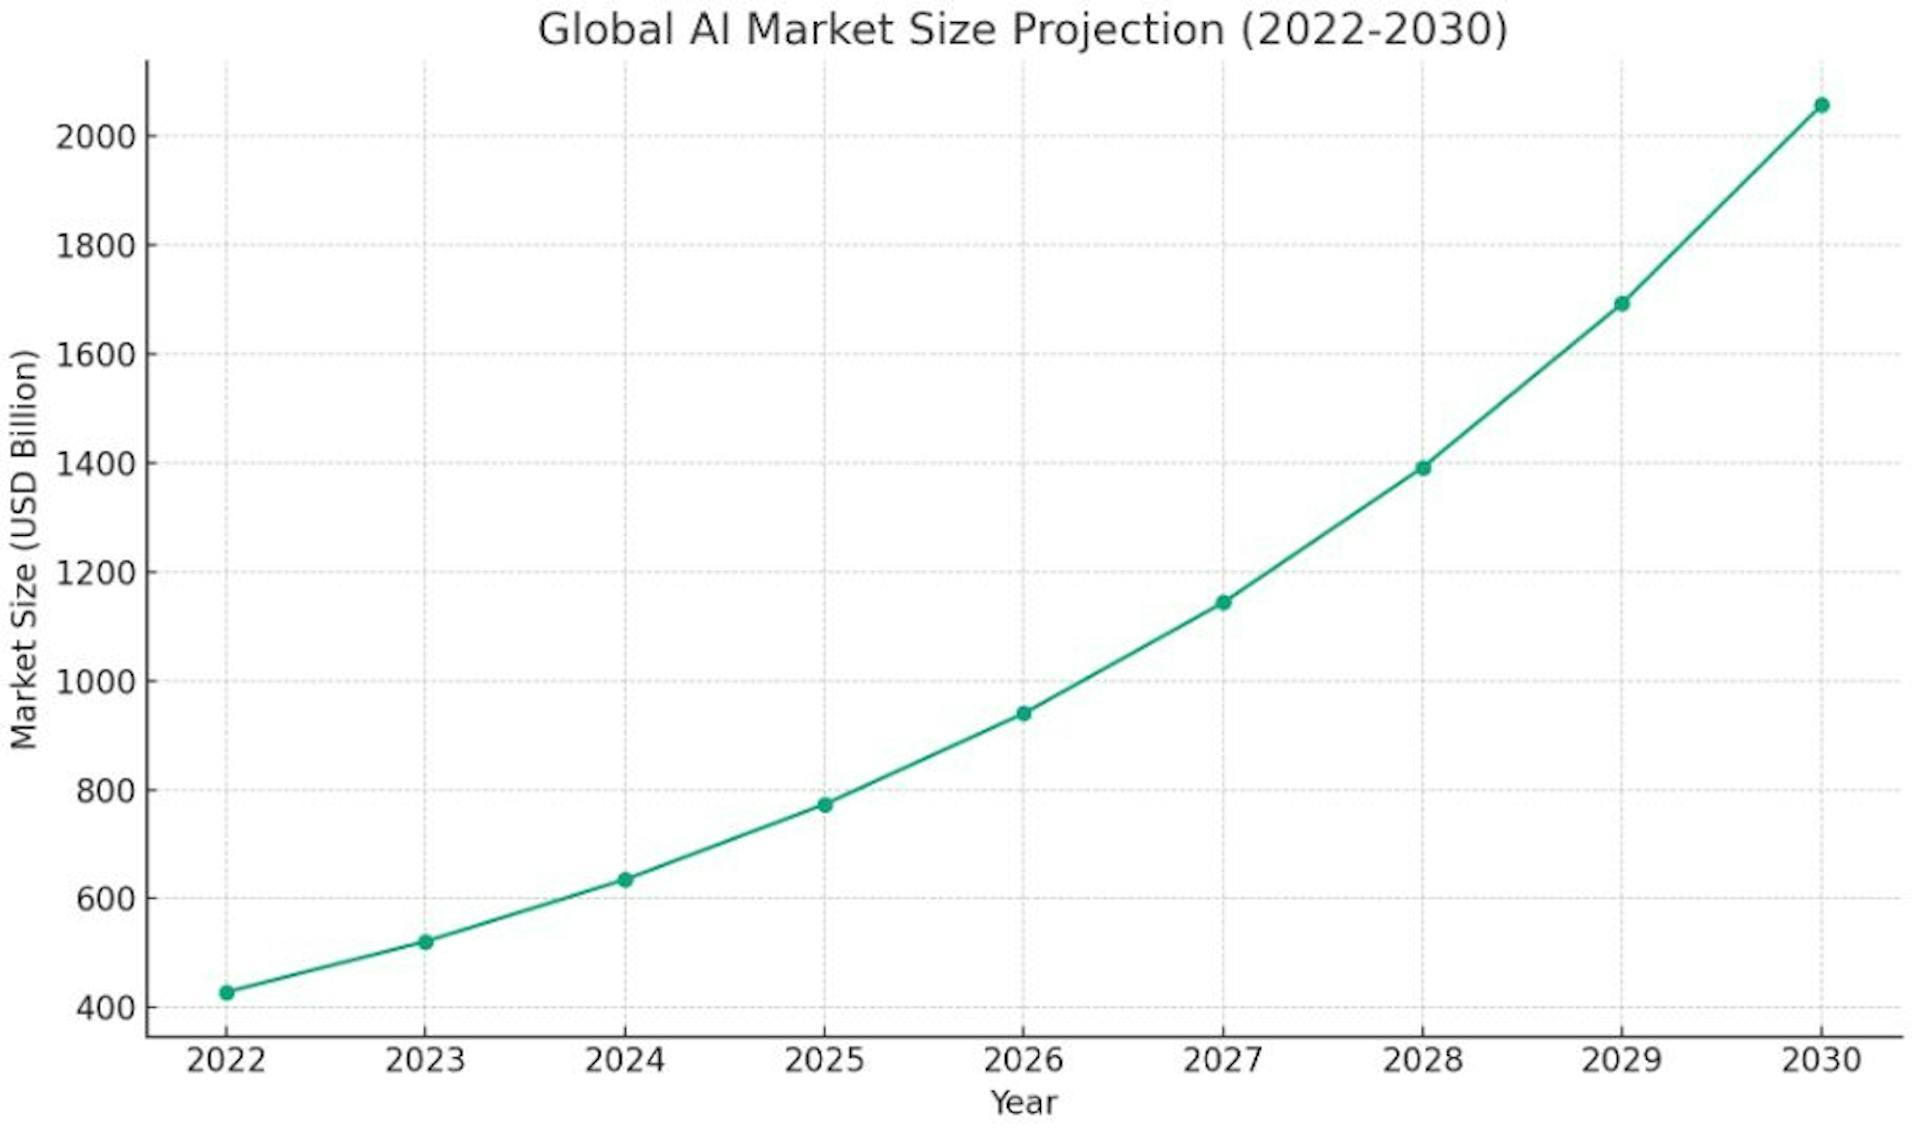 Gráfico que ilustra o crescimento projetado do tamanho do mercado global de IA de 2022 a 2030.